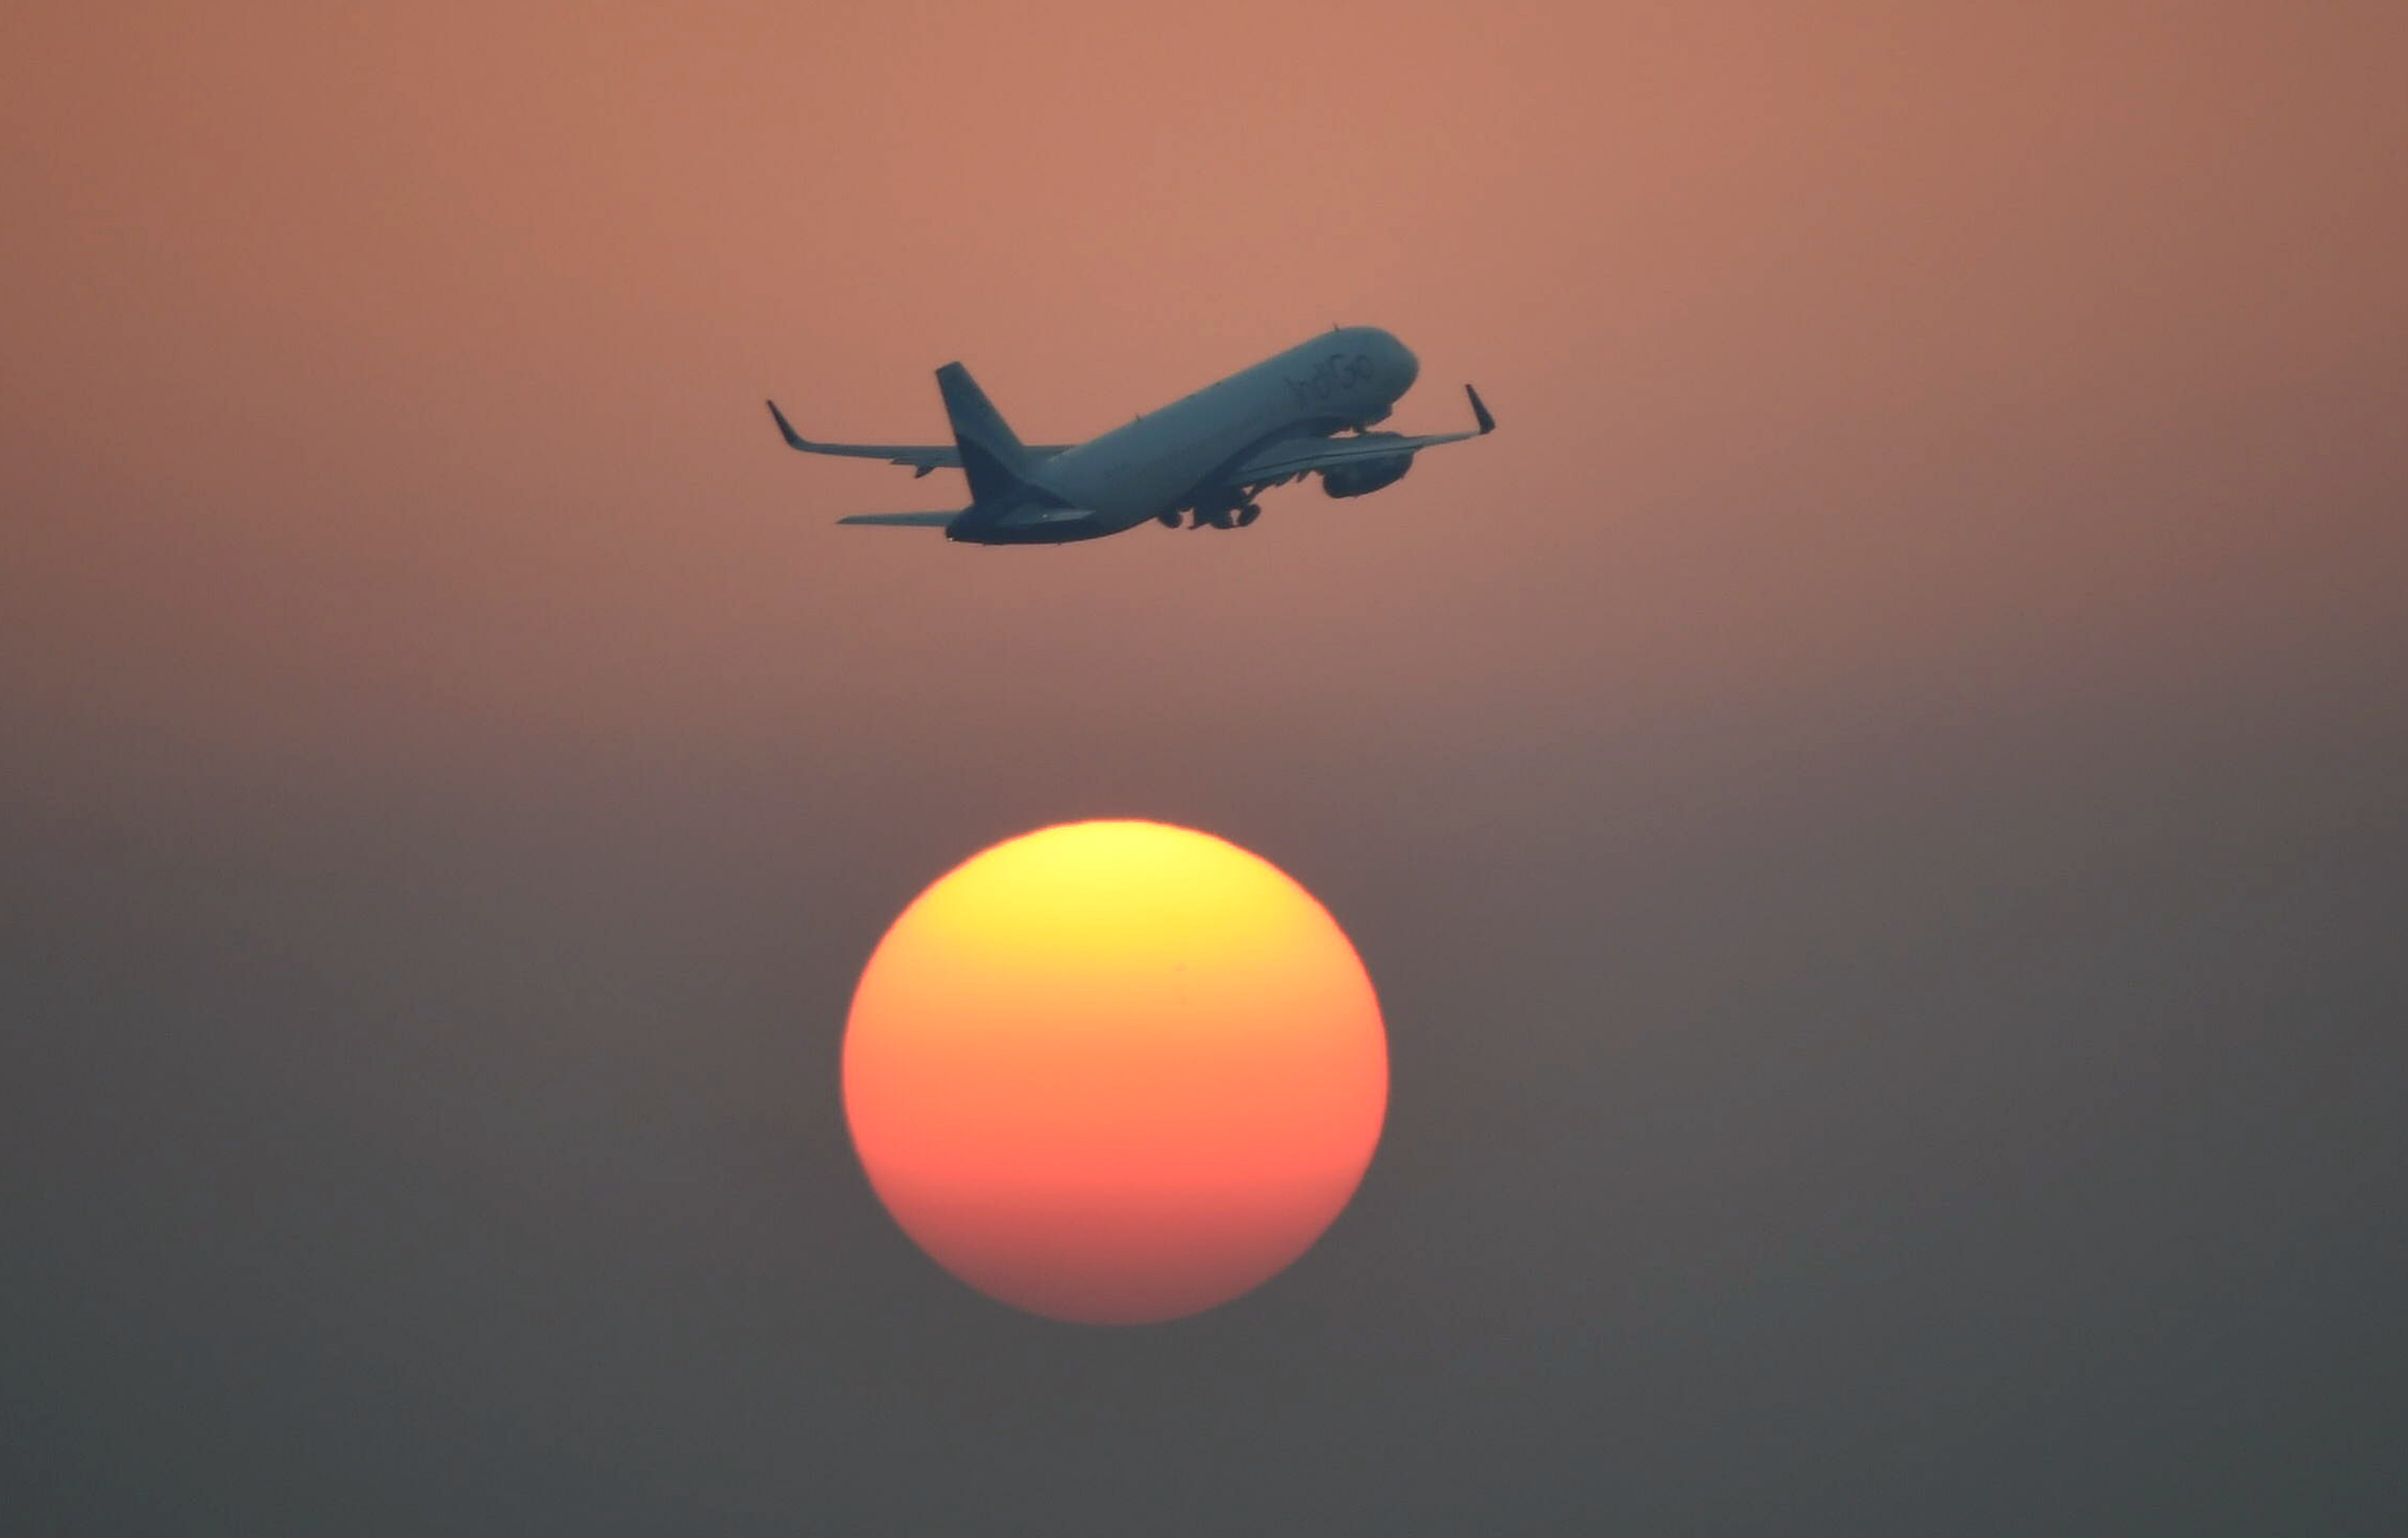 Mostantól nem dobhatják ki az emberi ürüléket India felett a repülők